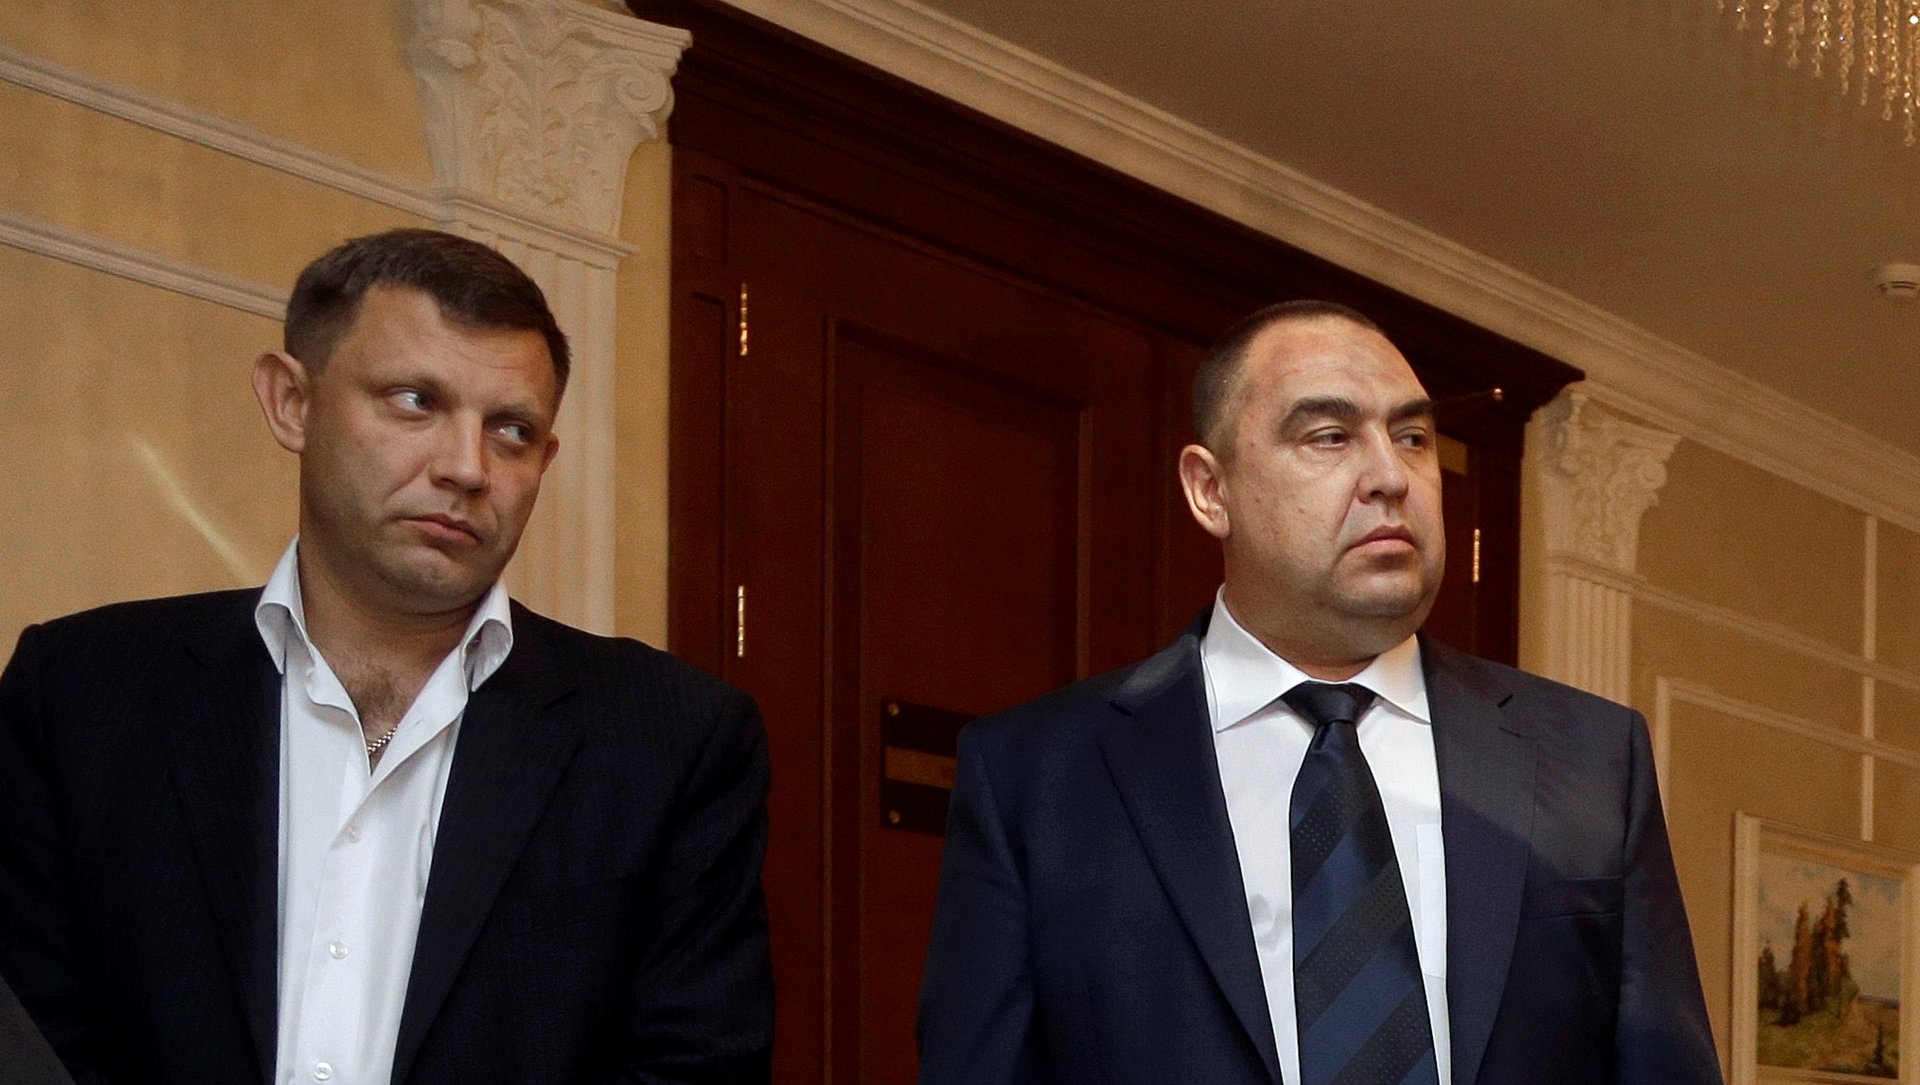 Каким способом "зачистят" главарей "ЛДНР" Захарченко и Плотницкого? Известный политолог высказал интересную версию